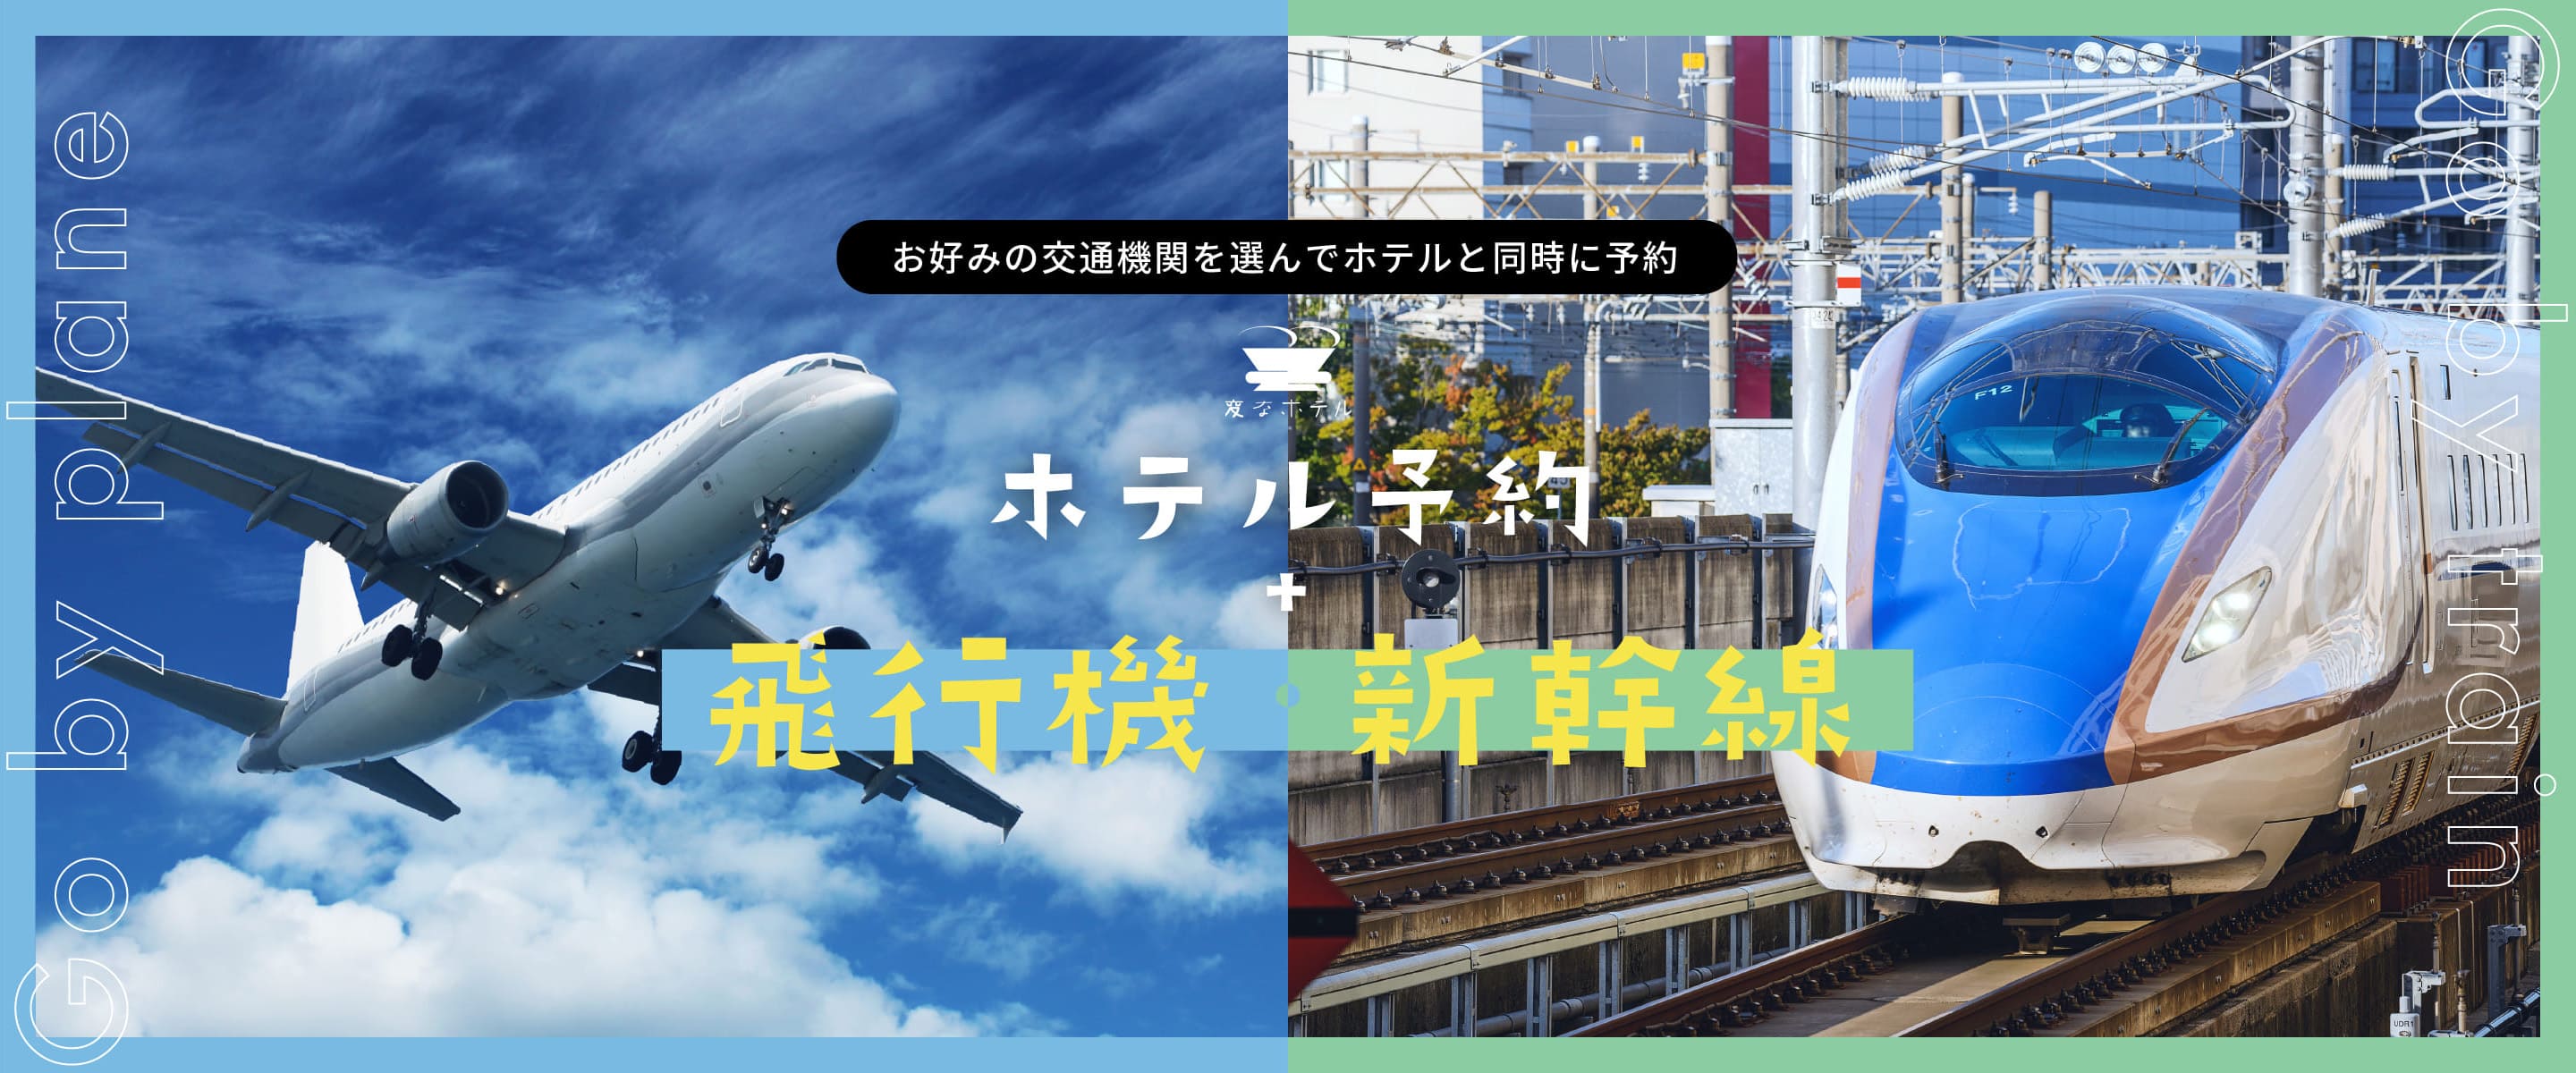 公式サイトから「宿泊」と「新幹線などのJR乗車券」を同時に予約できるようになりました！